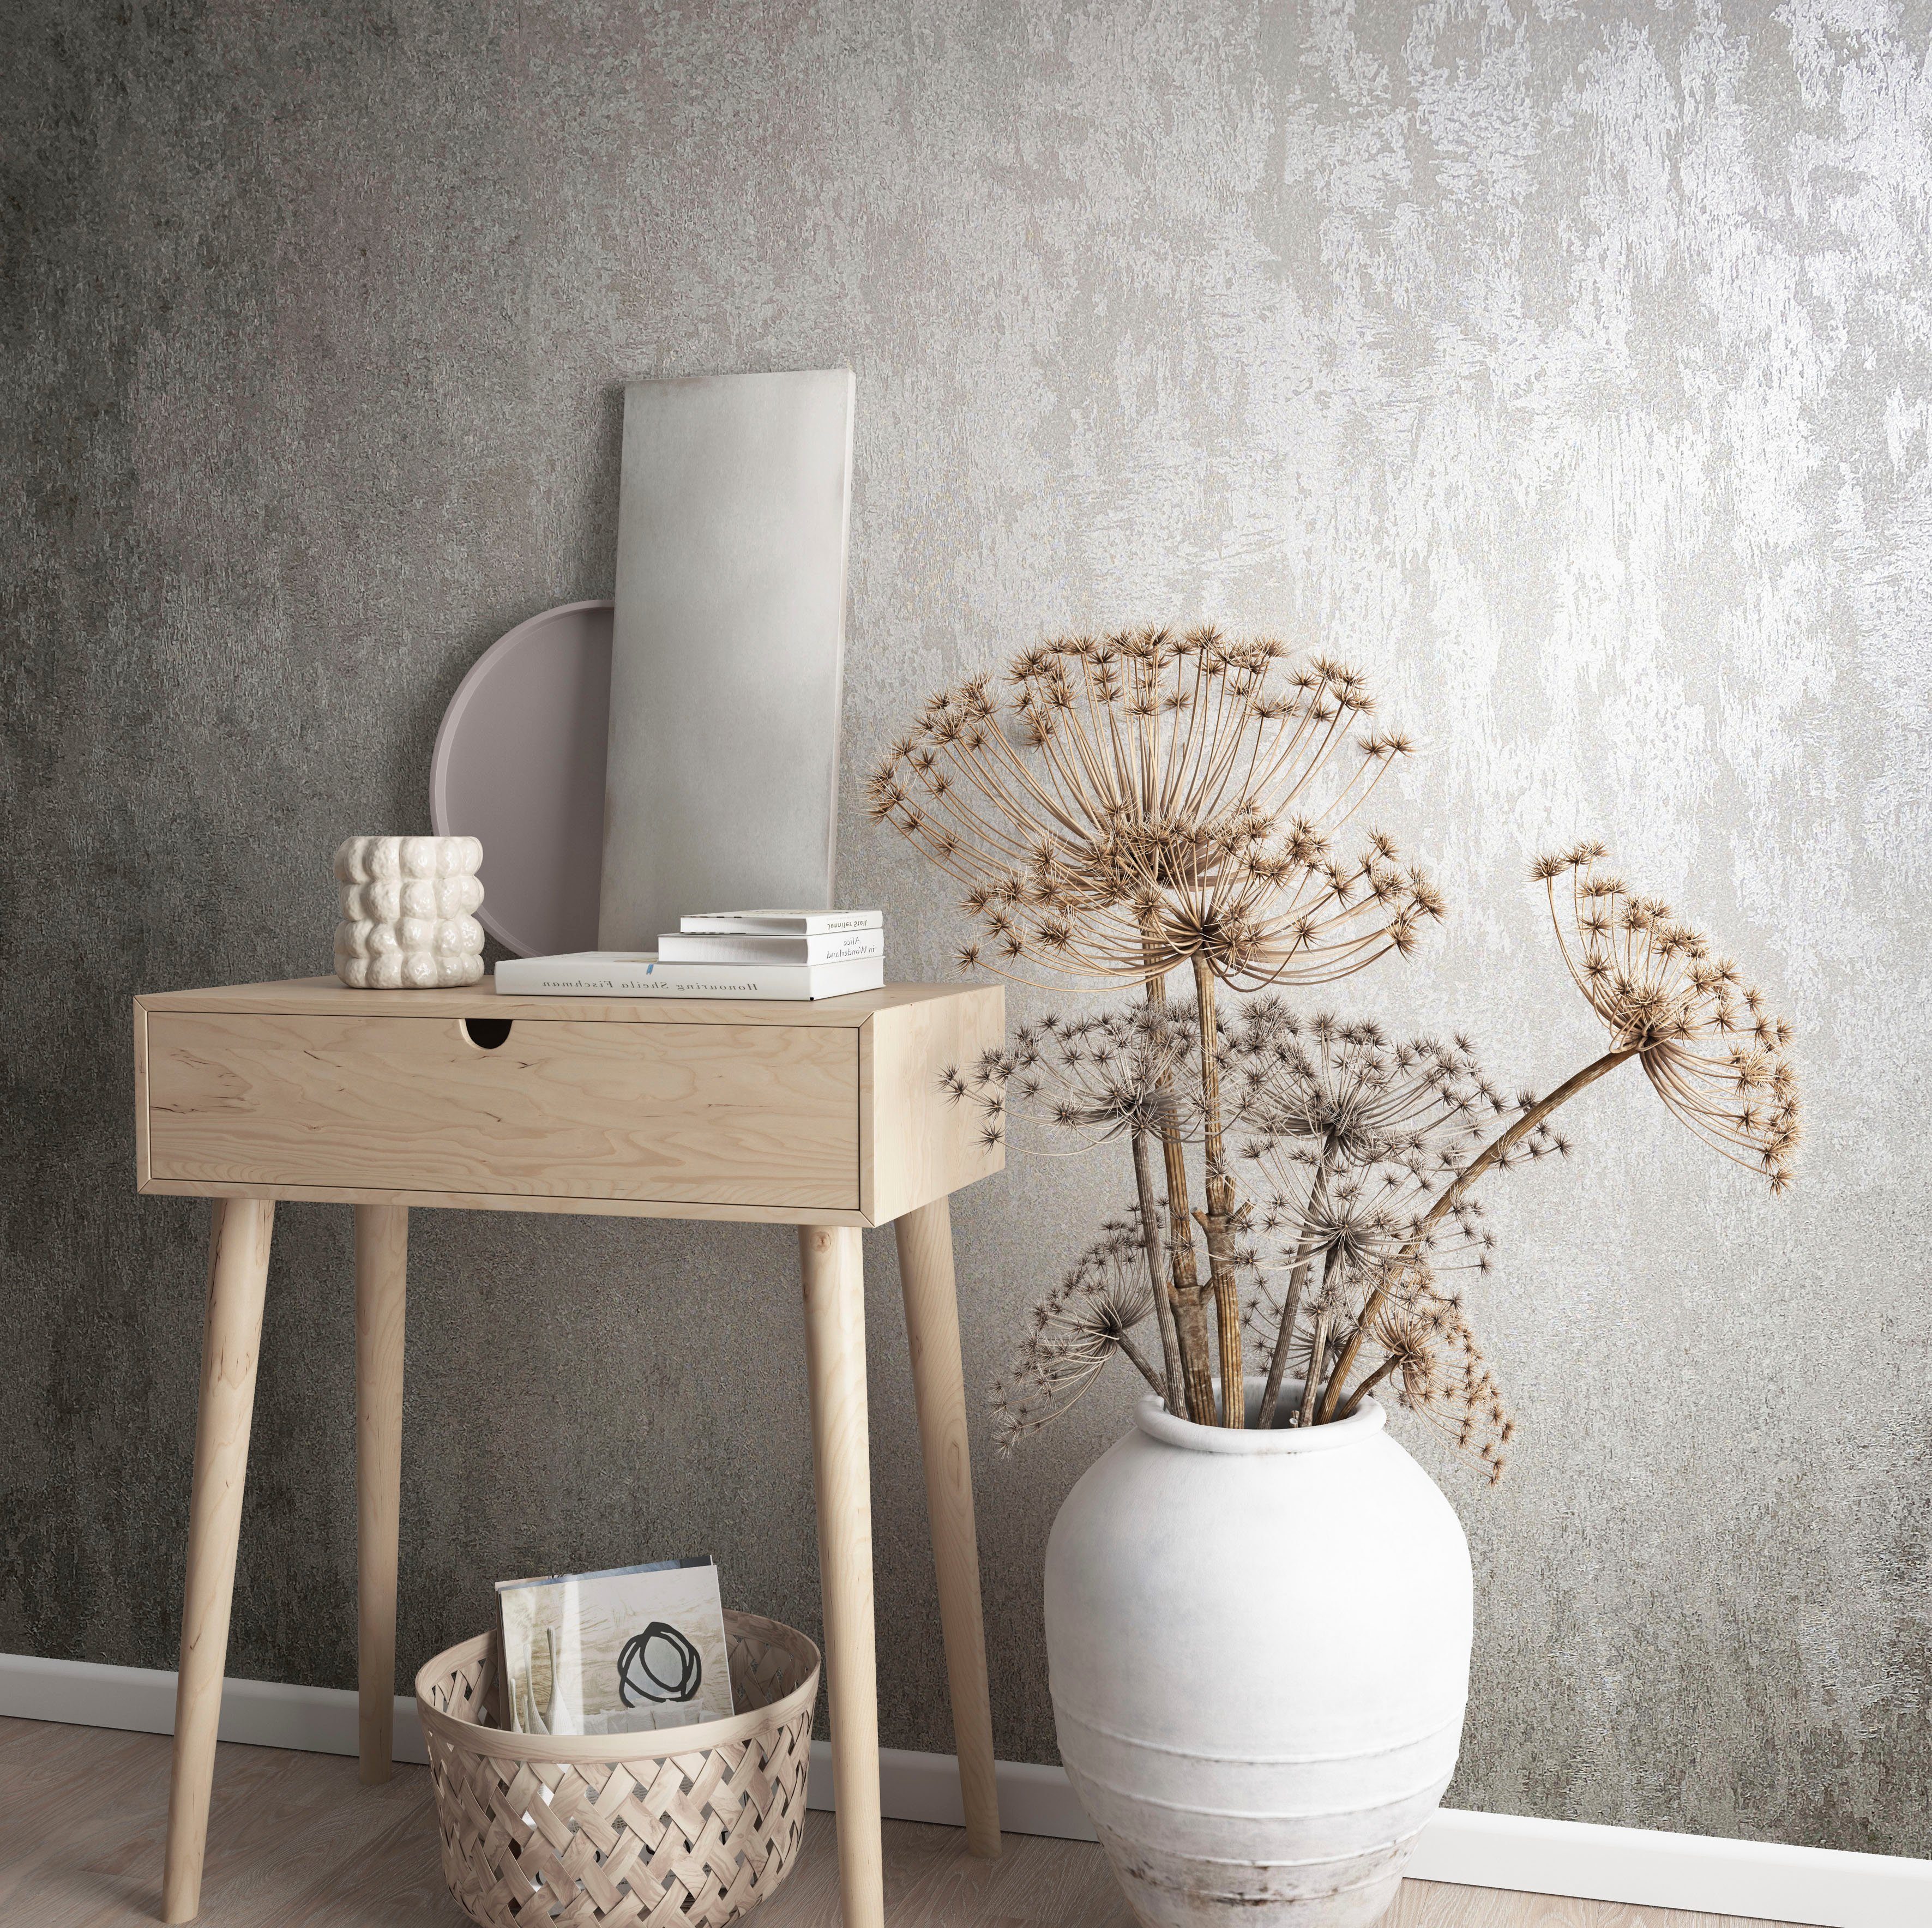 Marburg Vliestapete Concrete, strukturiert, glänzend, moderne Vliestapete für Wohnzimmer Schlafzimmer Küche grau-braun